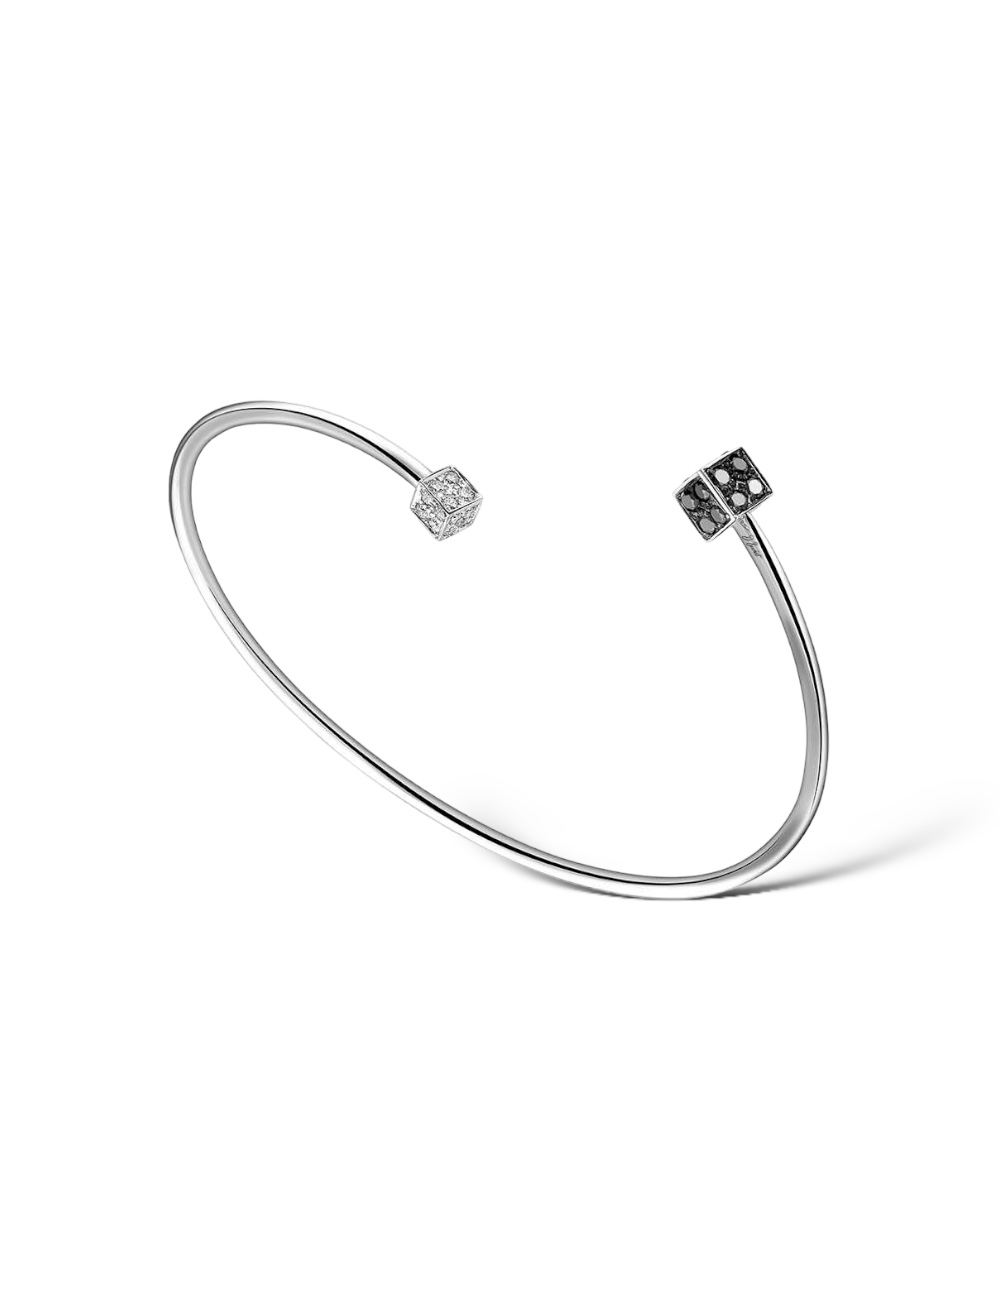 Bracelet jonc Cube pour femme : design unique avec diamants contrastés, apportant sophistication à chaque tenue.